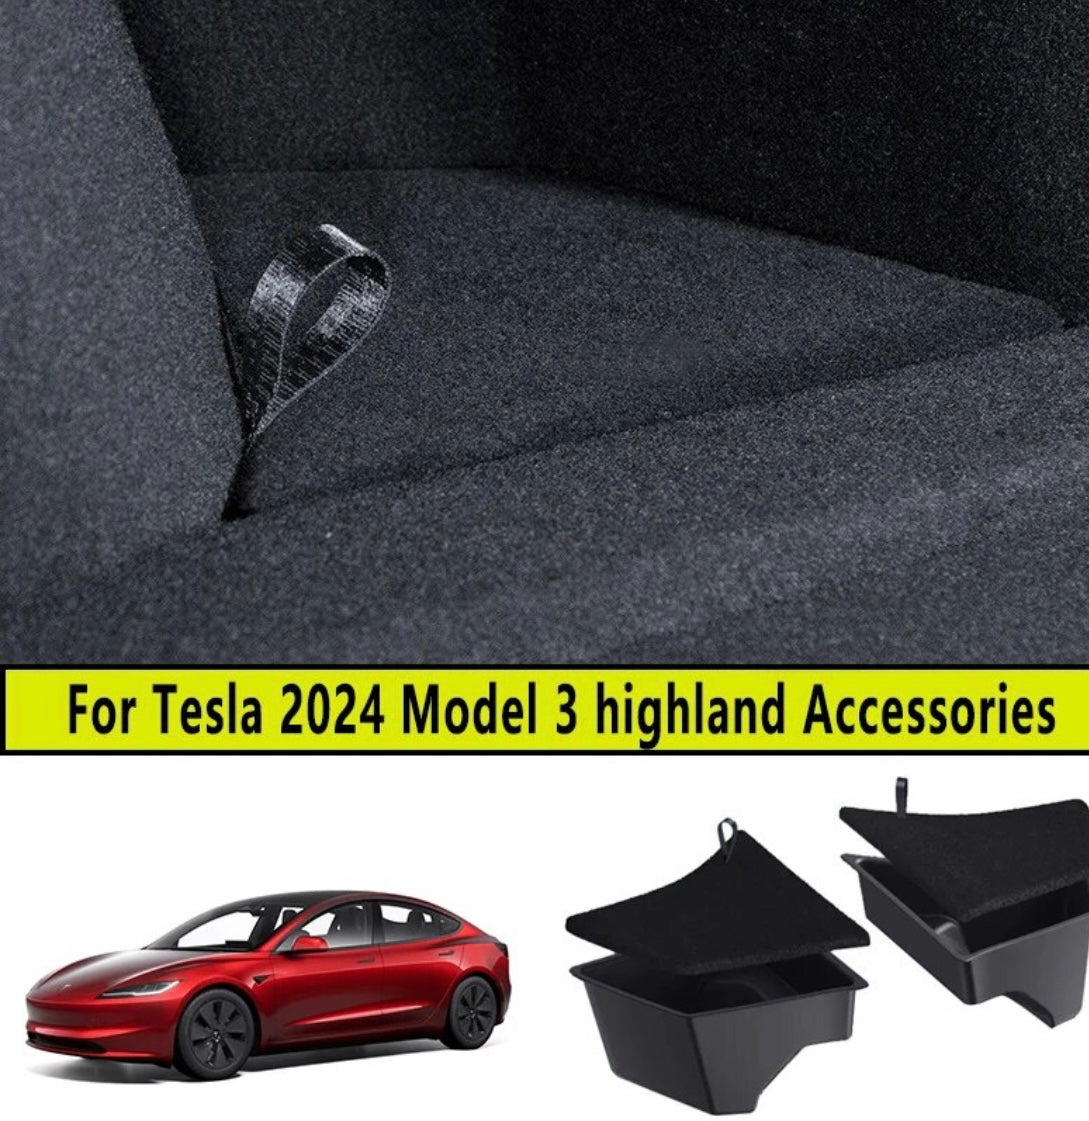 Accessoire Tesla : Boite de rangement couleurs Model 3+ Highland. – Allset